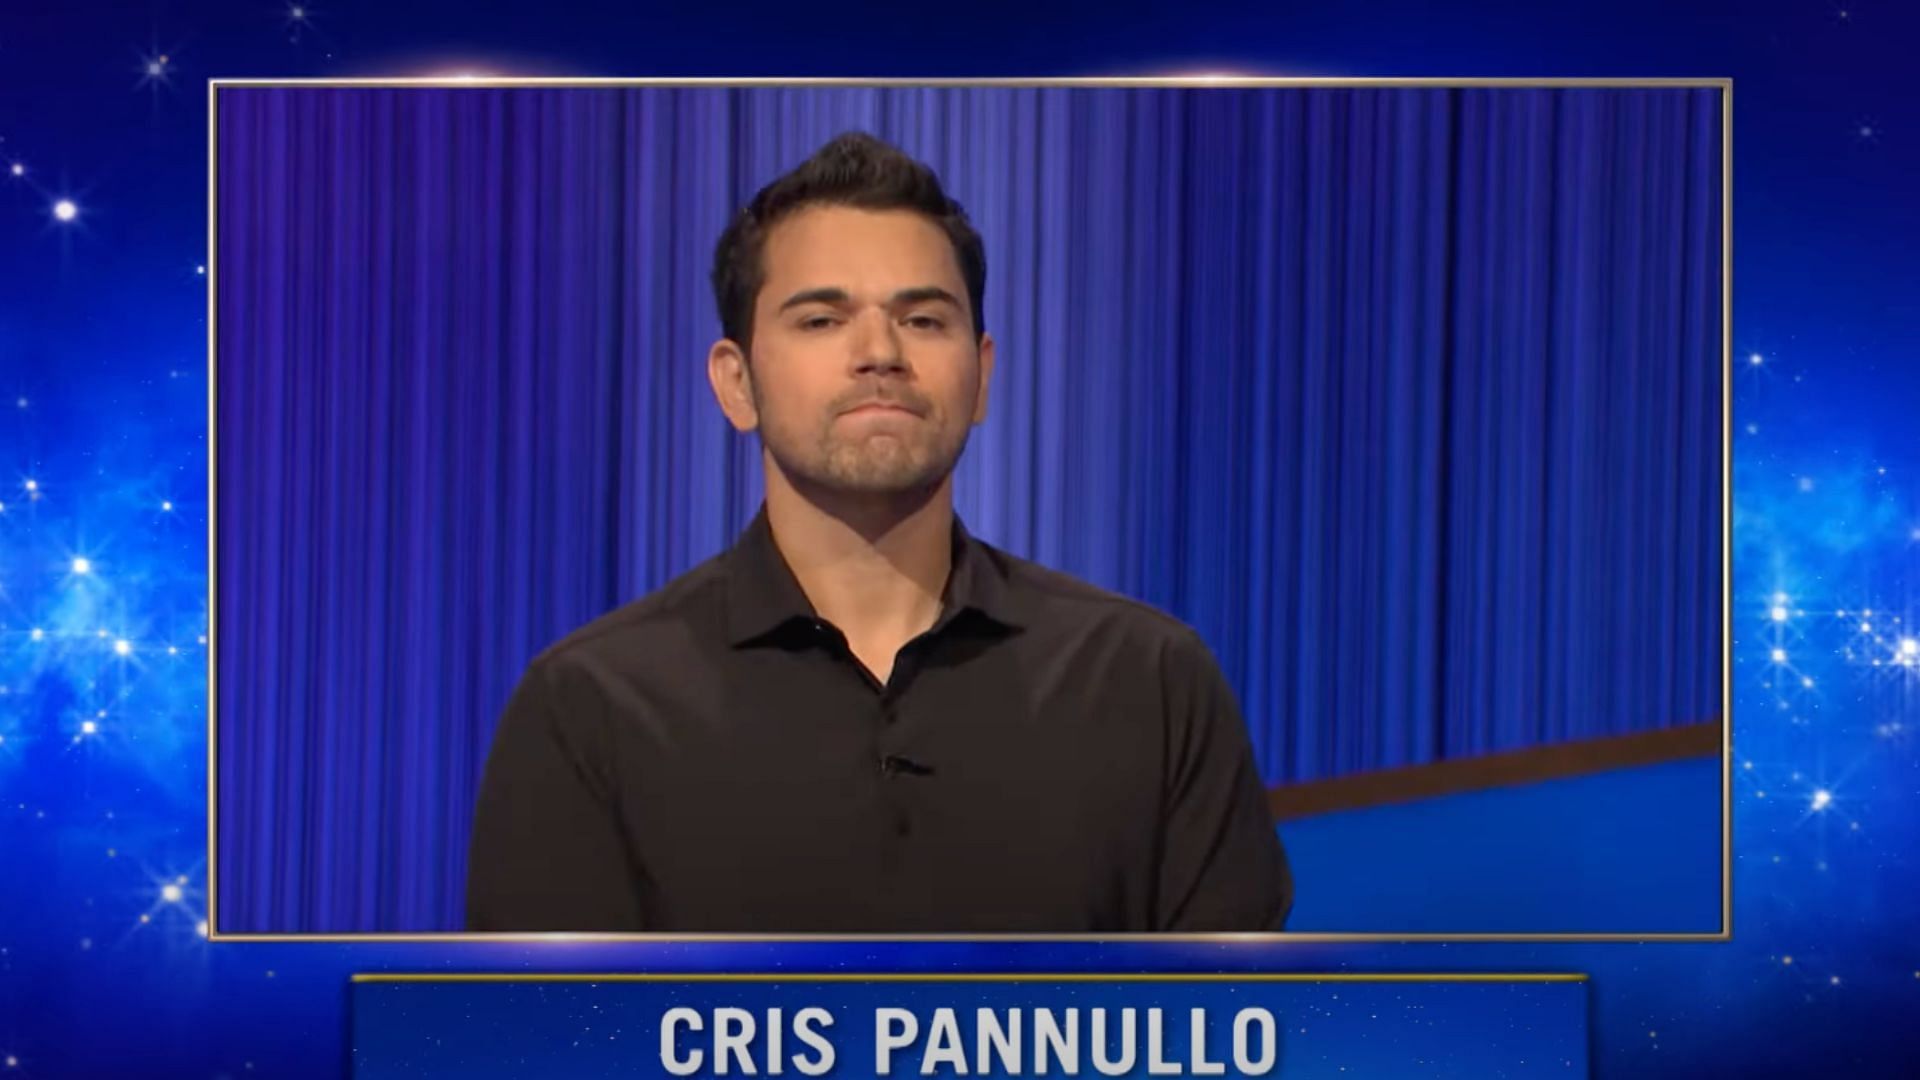 Cris Pannullo: tonight's winner (Image via Jeopardy)